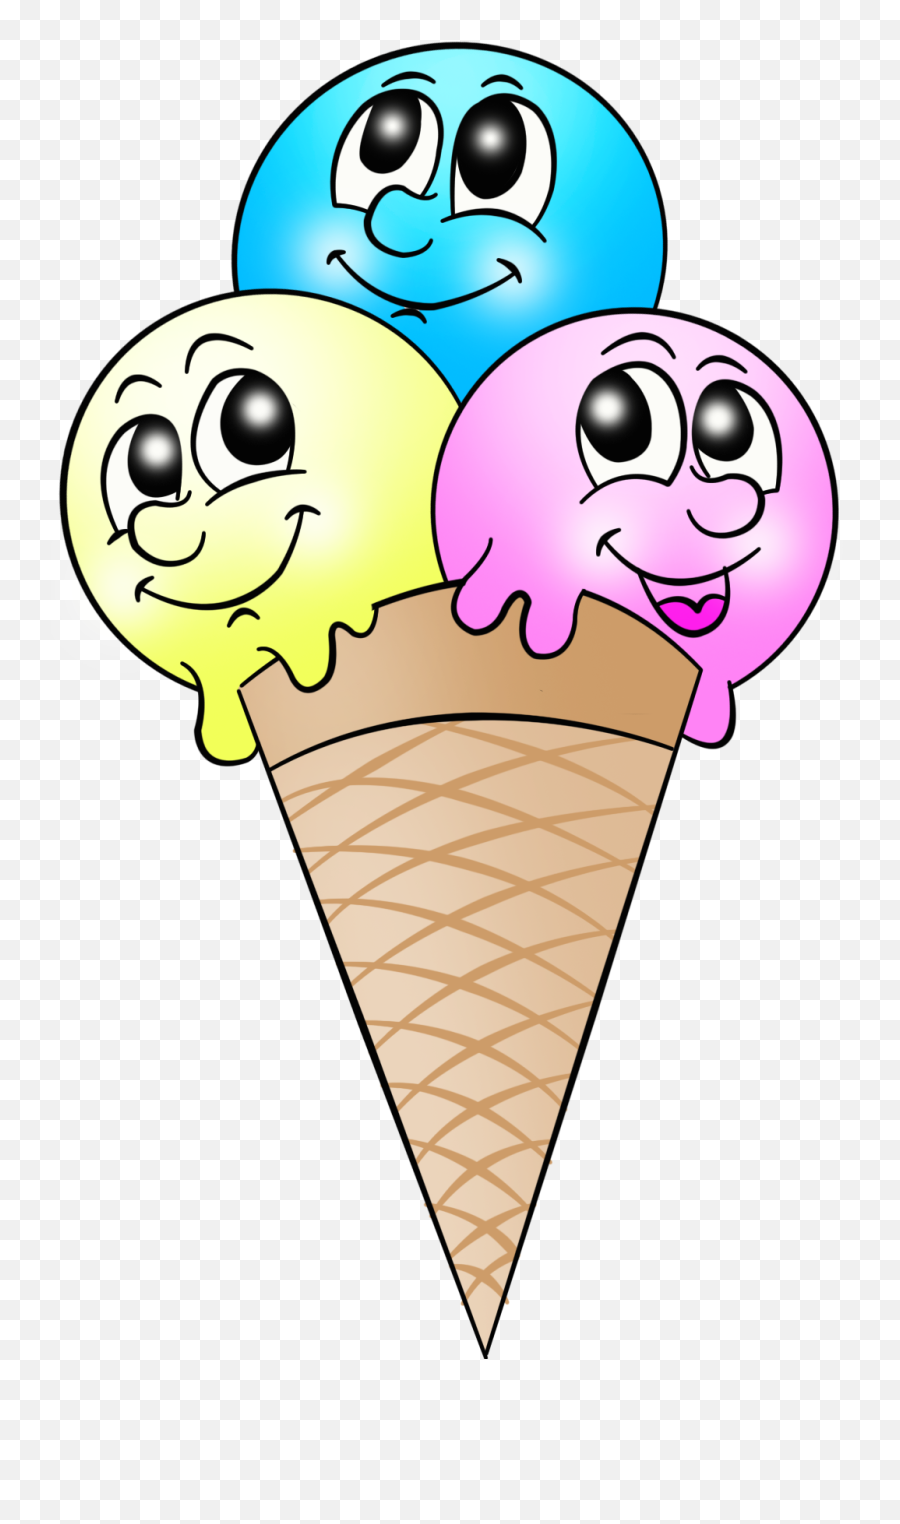 Icecream Clipart Face Icecream Face Transparent Free For - Ice Cream Happy Face Clipart Emoji,Emoji Ice Cream